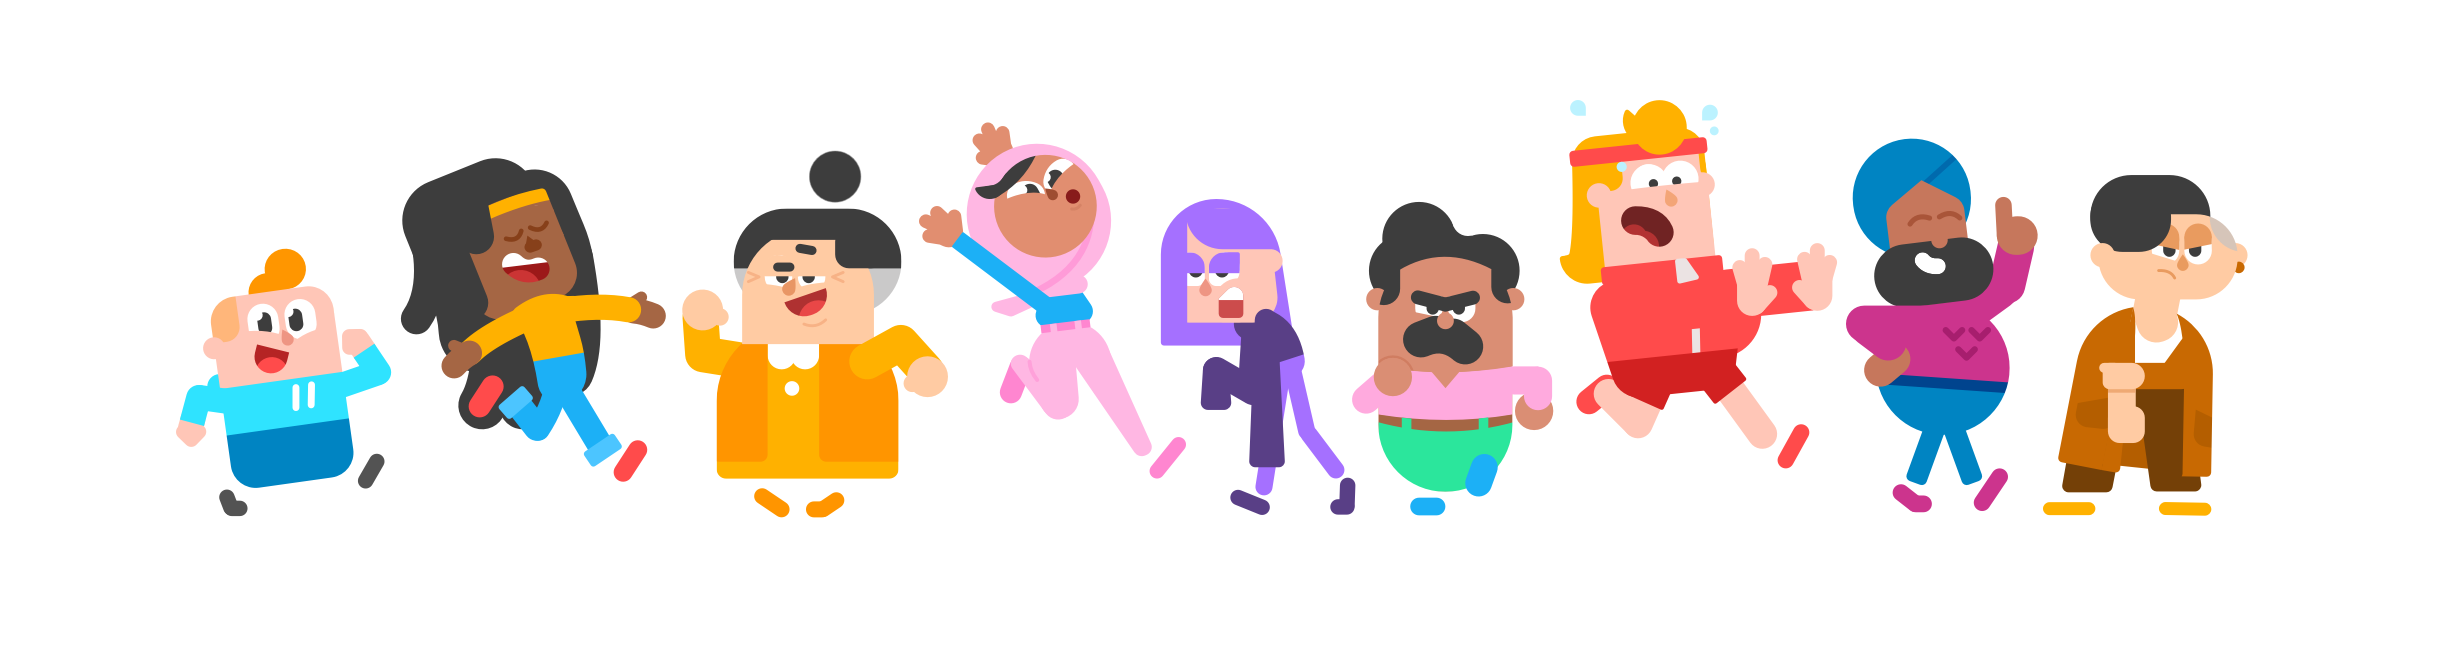 Captura de pantalla de los personajes de Duolingo. De izquierda a derecha tenemos a Junior, Bea, Lucy, Zari, Lily, Oscar, Eddy, Vikram, y Lin